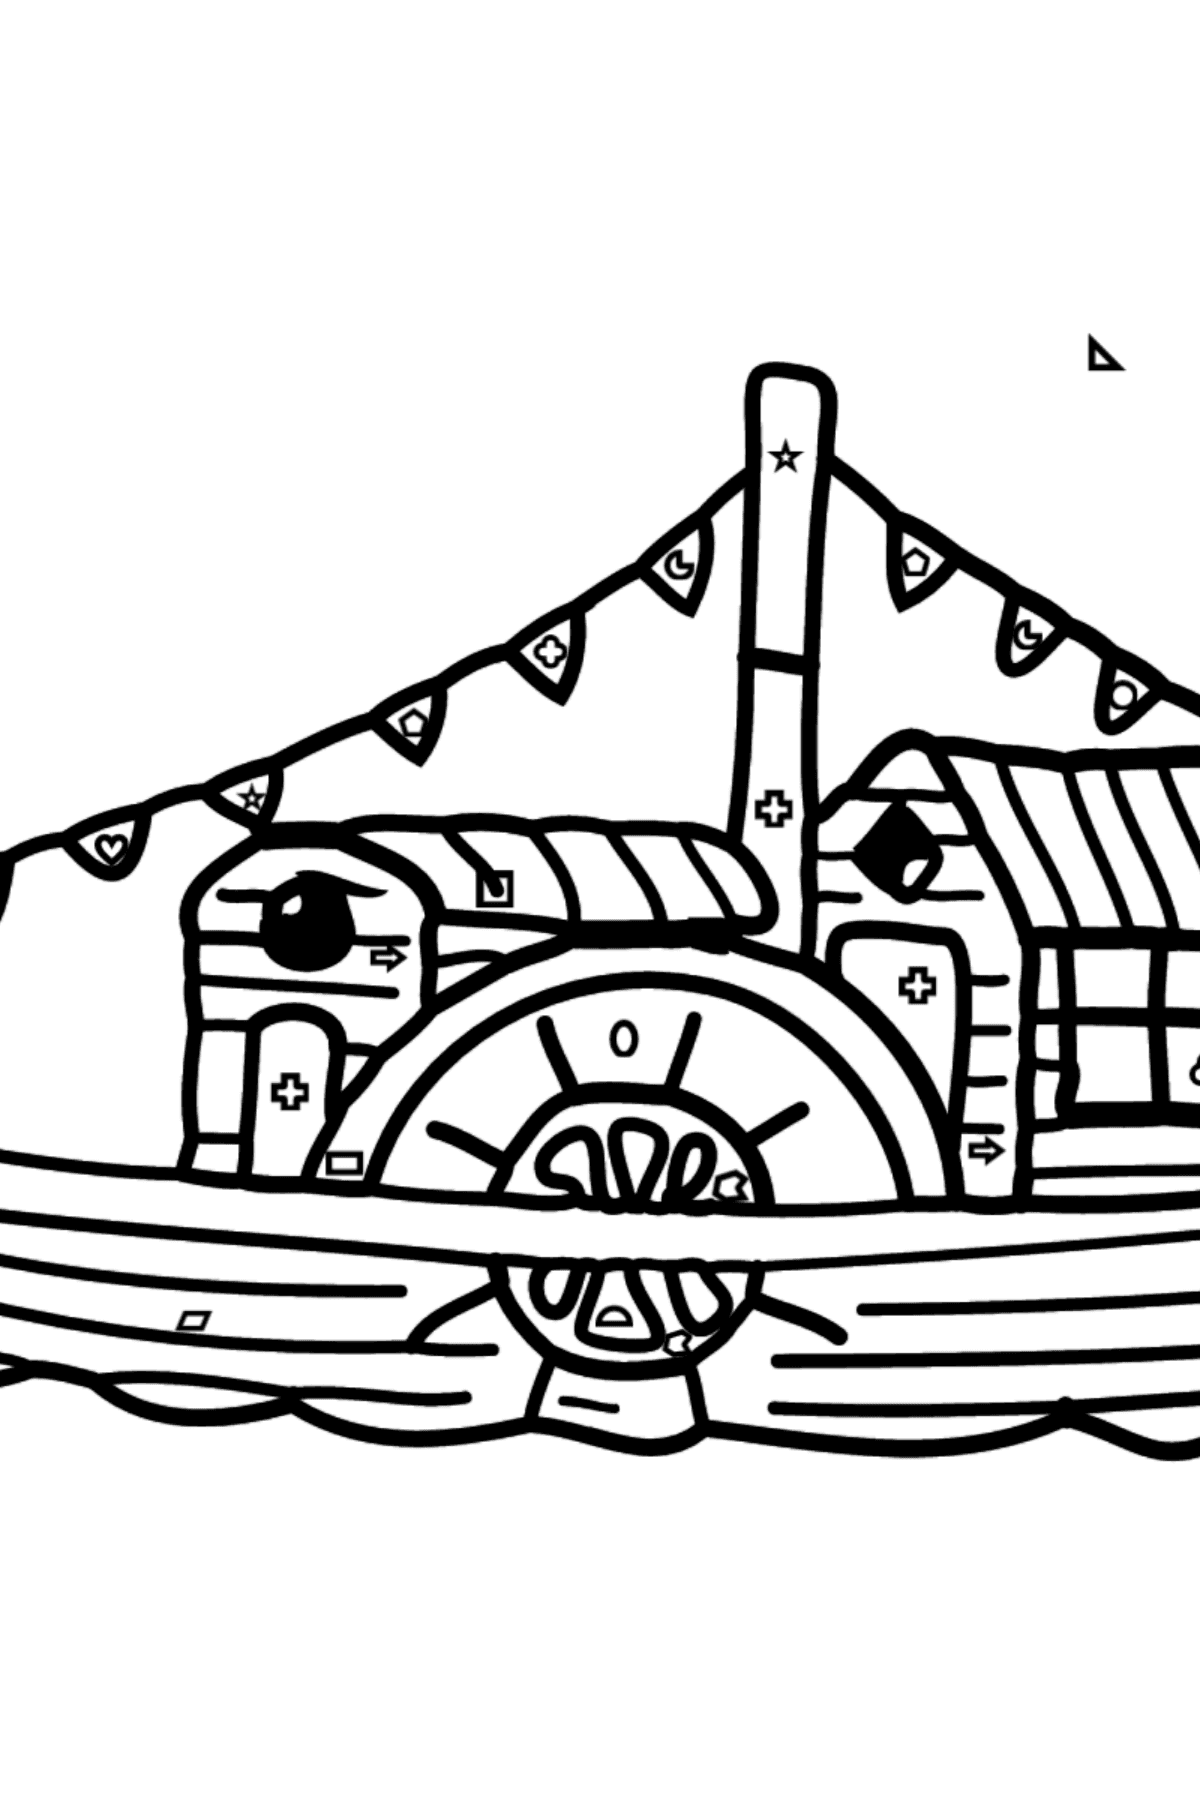 Раскраска Кораблик - Картинка высокого качества для Детей